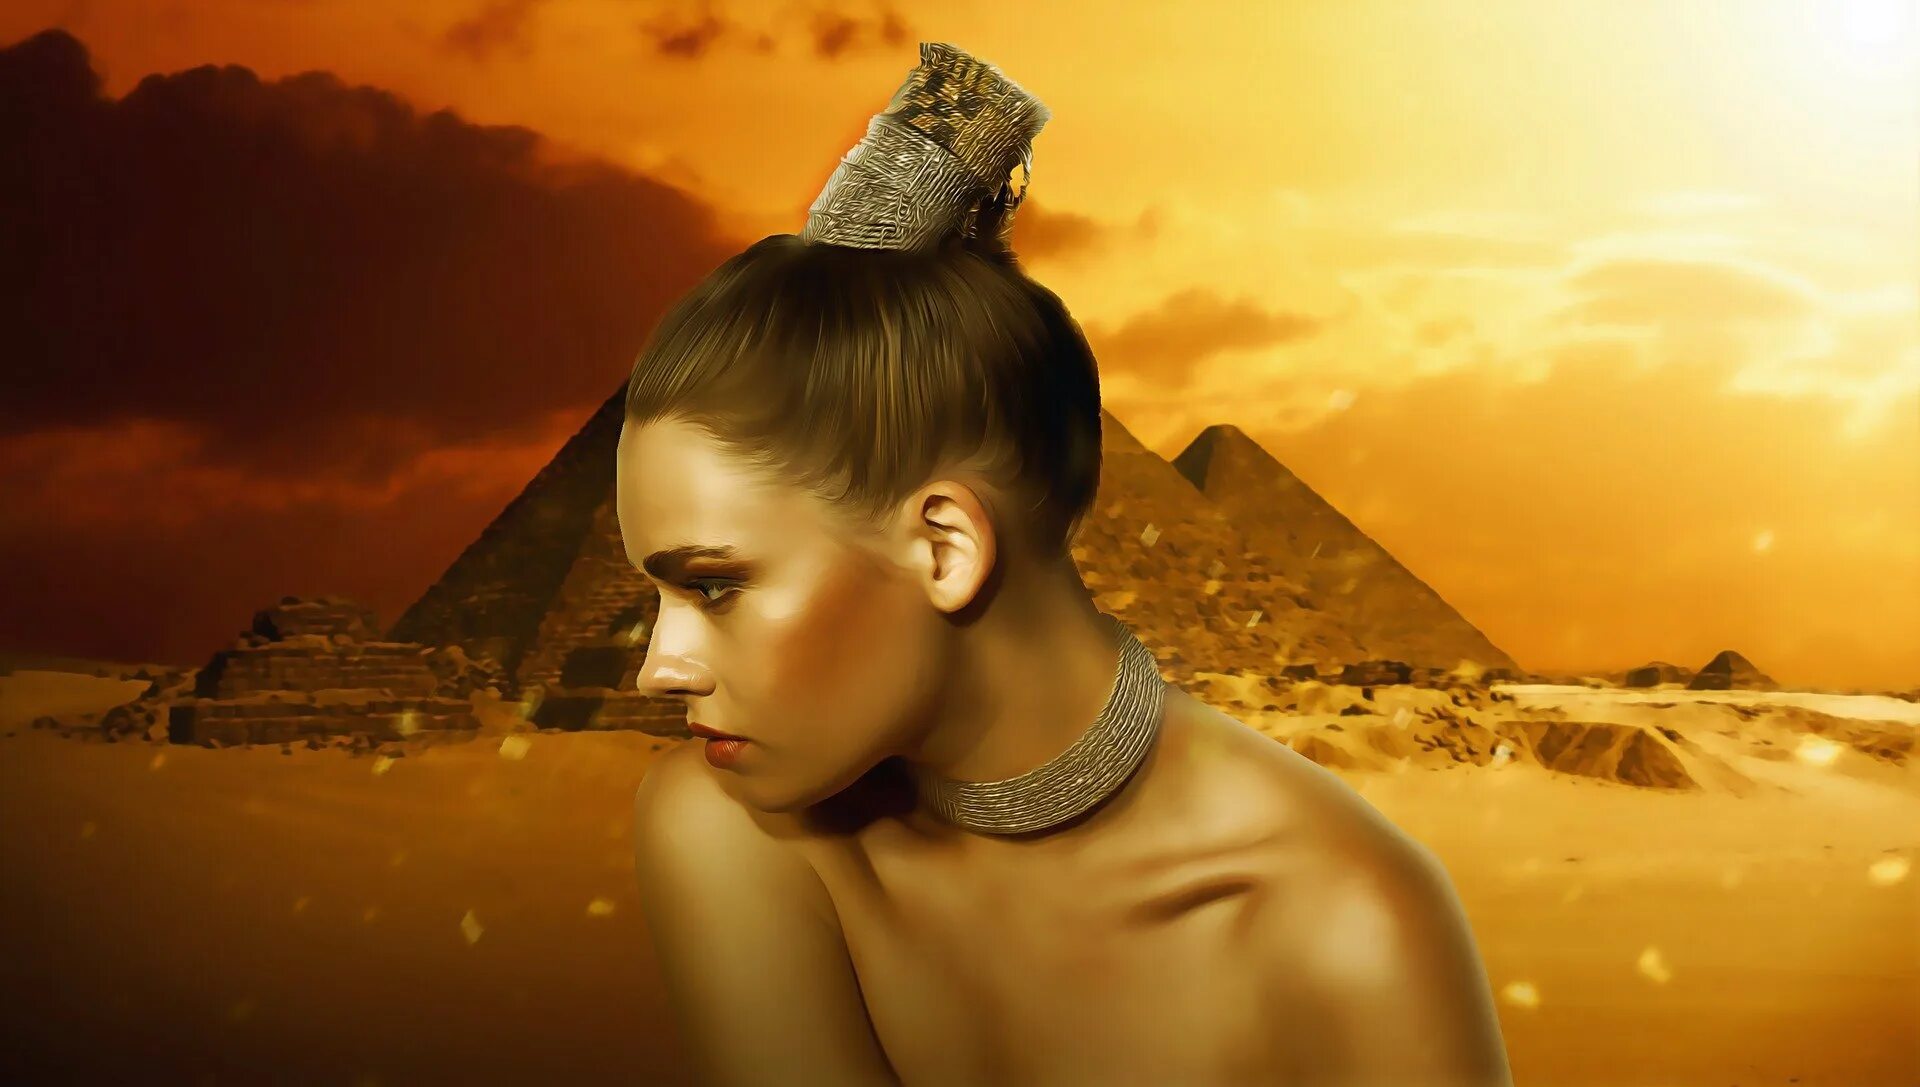 Я песок и нефертитити oggurama. Богиня Египта Нефертити. Нефертити царица Египта шугаринг. Нефертити картина. Фотосессия Клеопатра в пустыне.